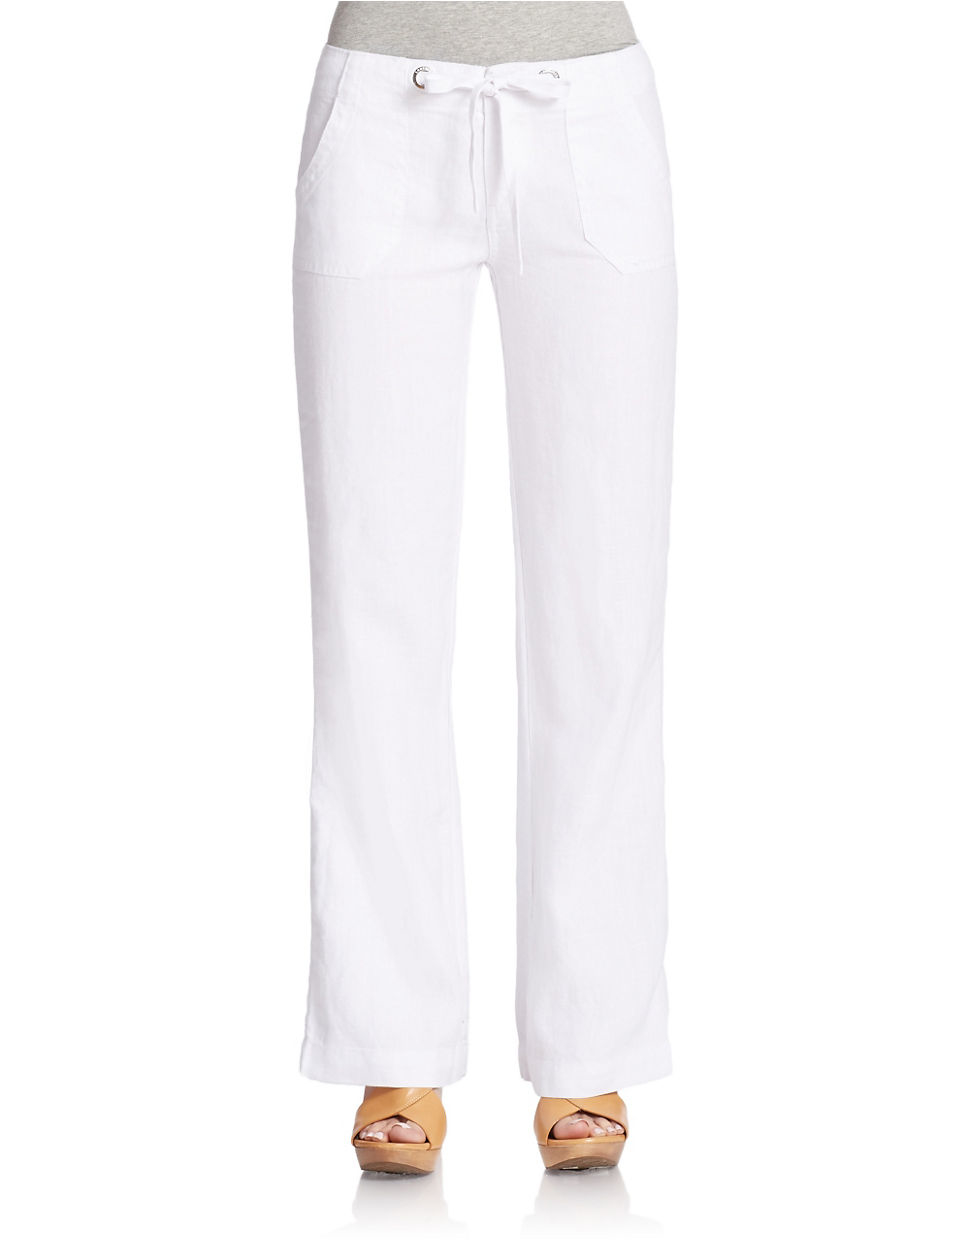 Lyst - Sanctuary Linen Pants in White